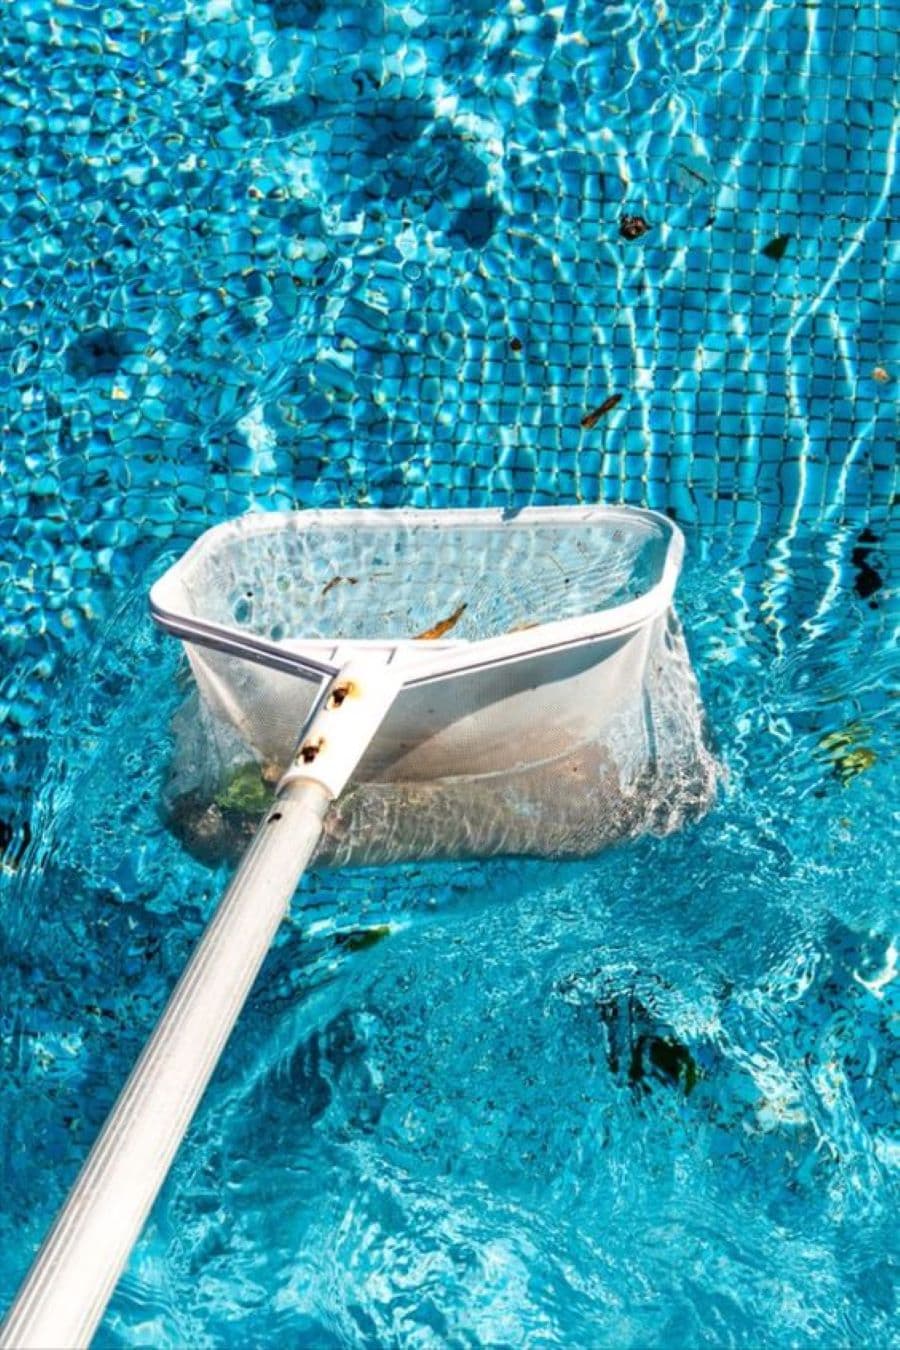 Detalle de un colador o limpiador de malla de piscina, color blanco, que está recogiendo pequeñas hojas de la superficie. Piscina con azulejos pequeños, color azul